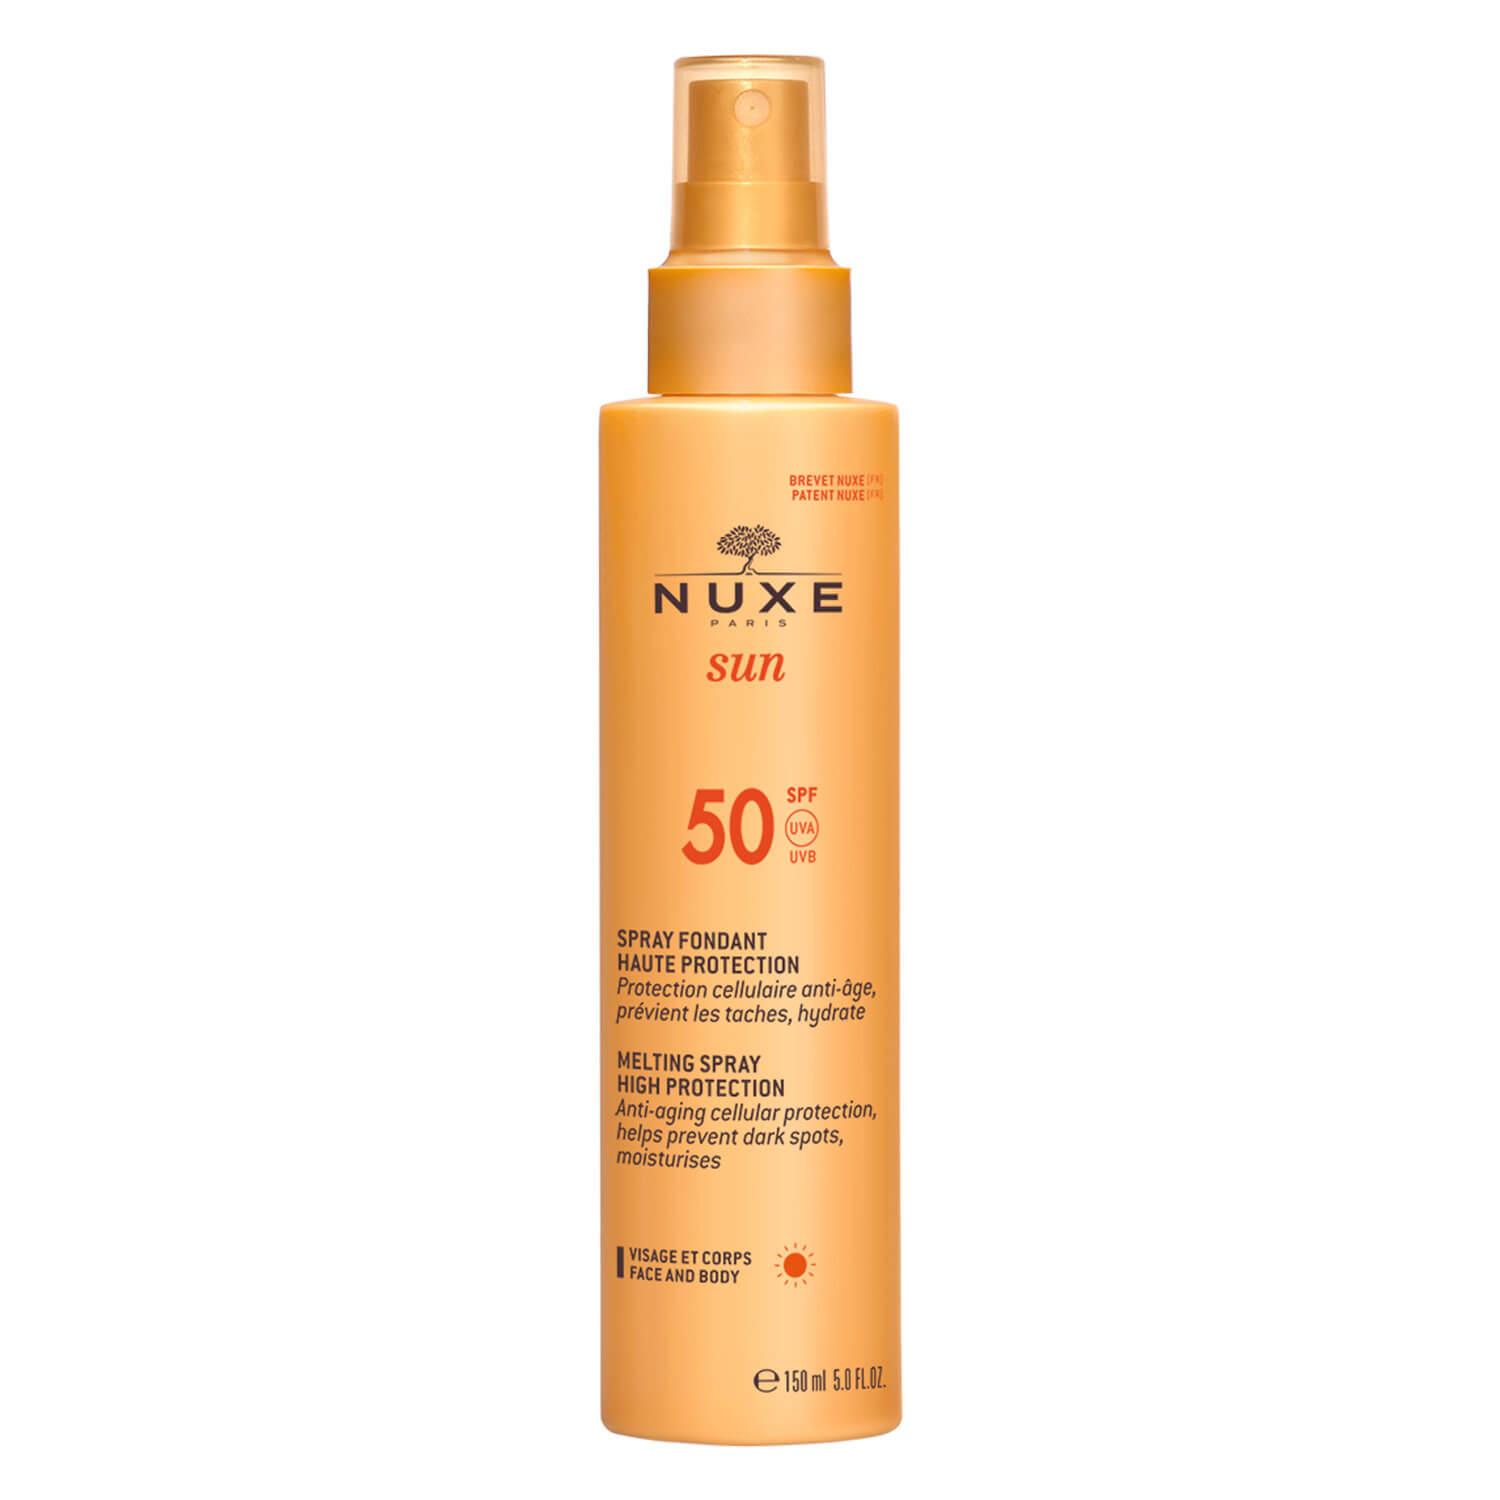 Nuxe Sun - Spray Fondant Haute Protection SPF50